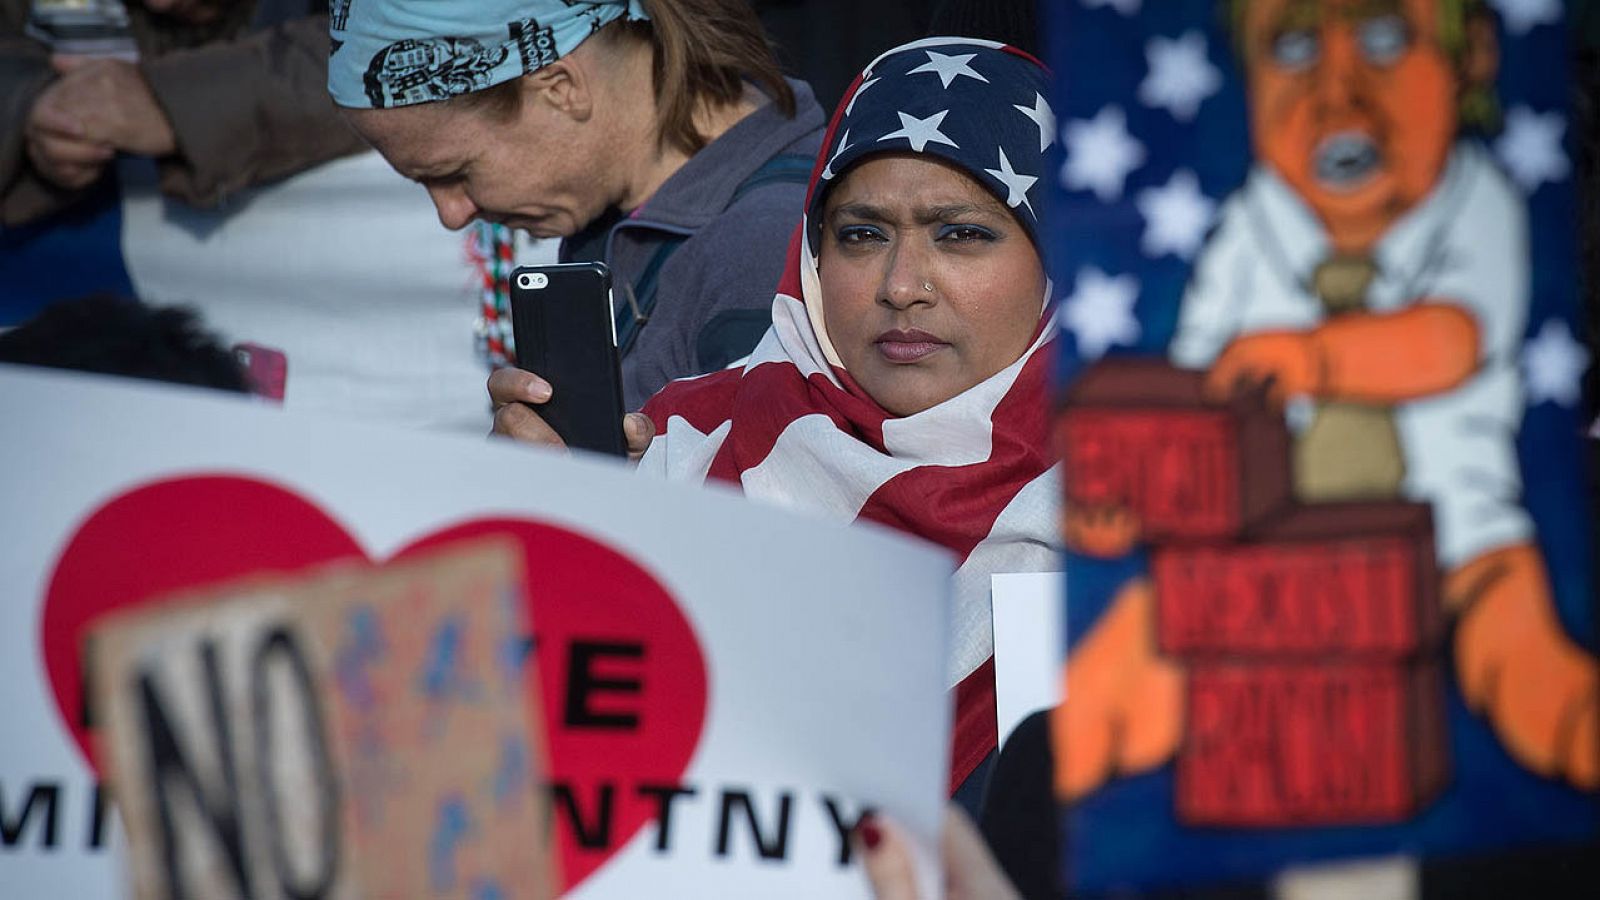 Manifestantes protestan en Nueva York contra el veto de Donald Trump a la entrada de ciudadanos de varios países musulmanes